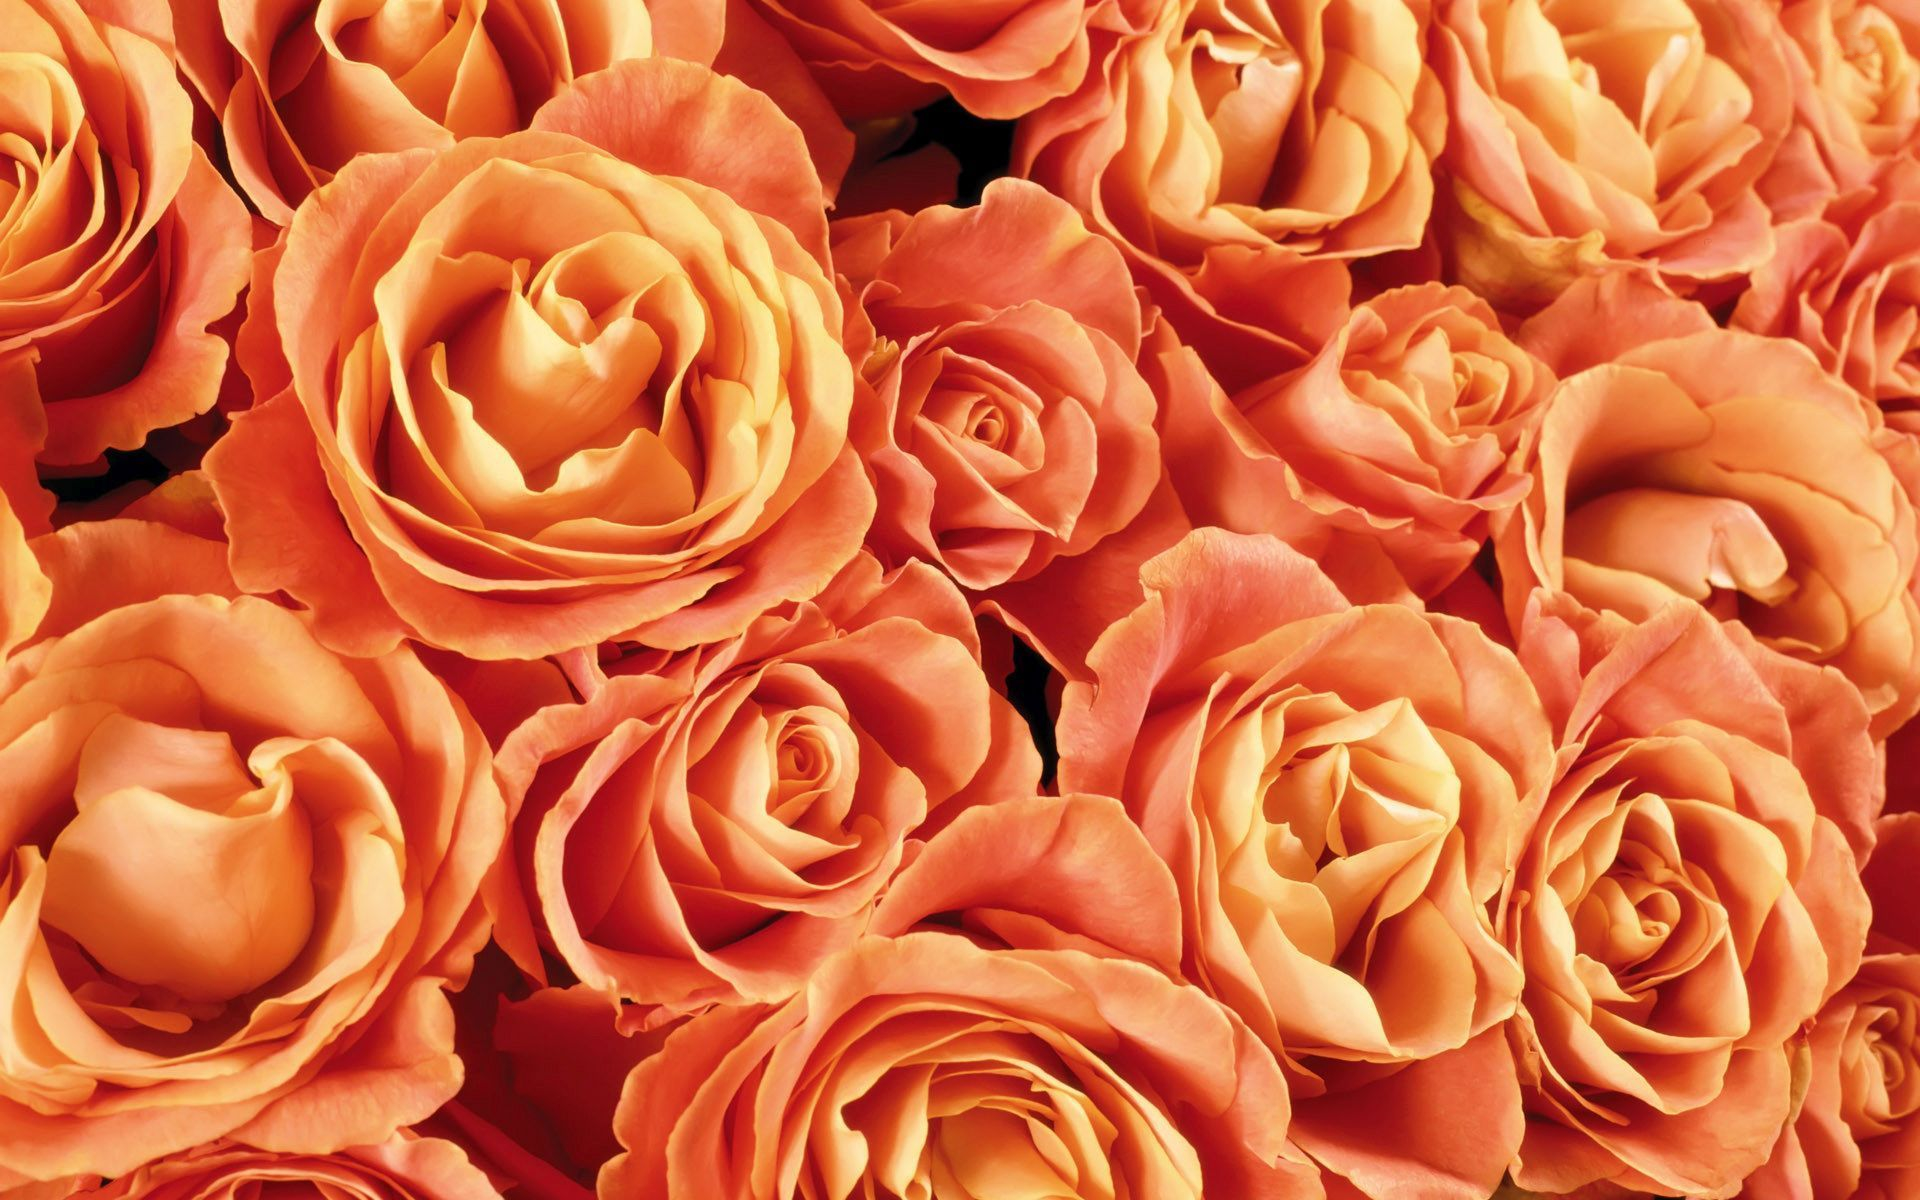 Скачать обои бесплатно Цветок, Роза, Земля/природа, Оранжевый Цветок, Флауэрсы картинка на рабочий стол ПК